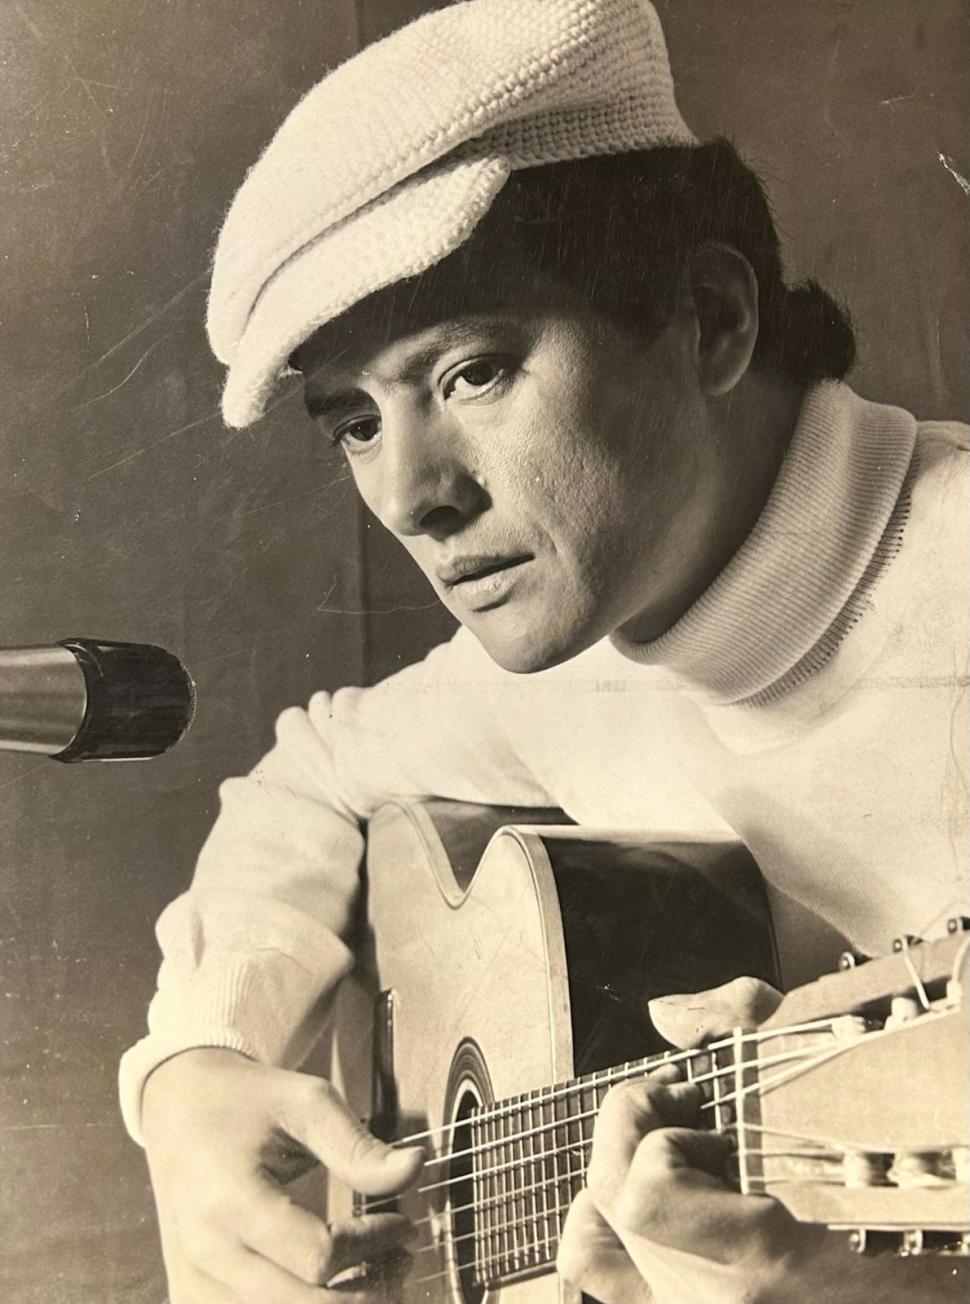 EL REY. A sus 30, Palito ya era uno de los cantautores más importantes de Latinoamérica. En aquella época ya cosechaba decenas de éxitos.